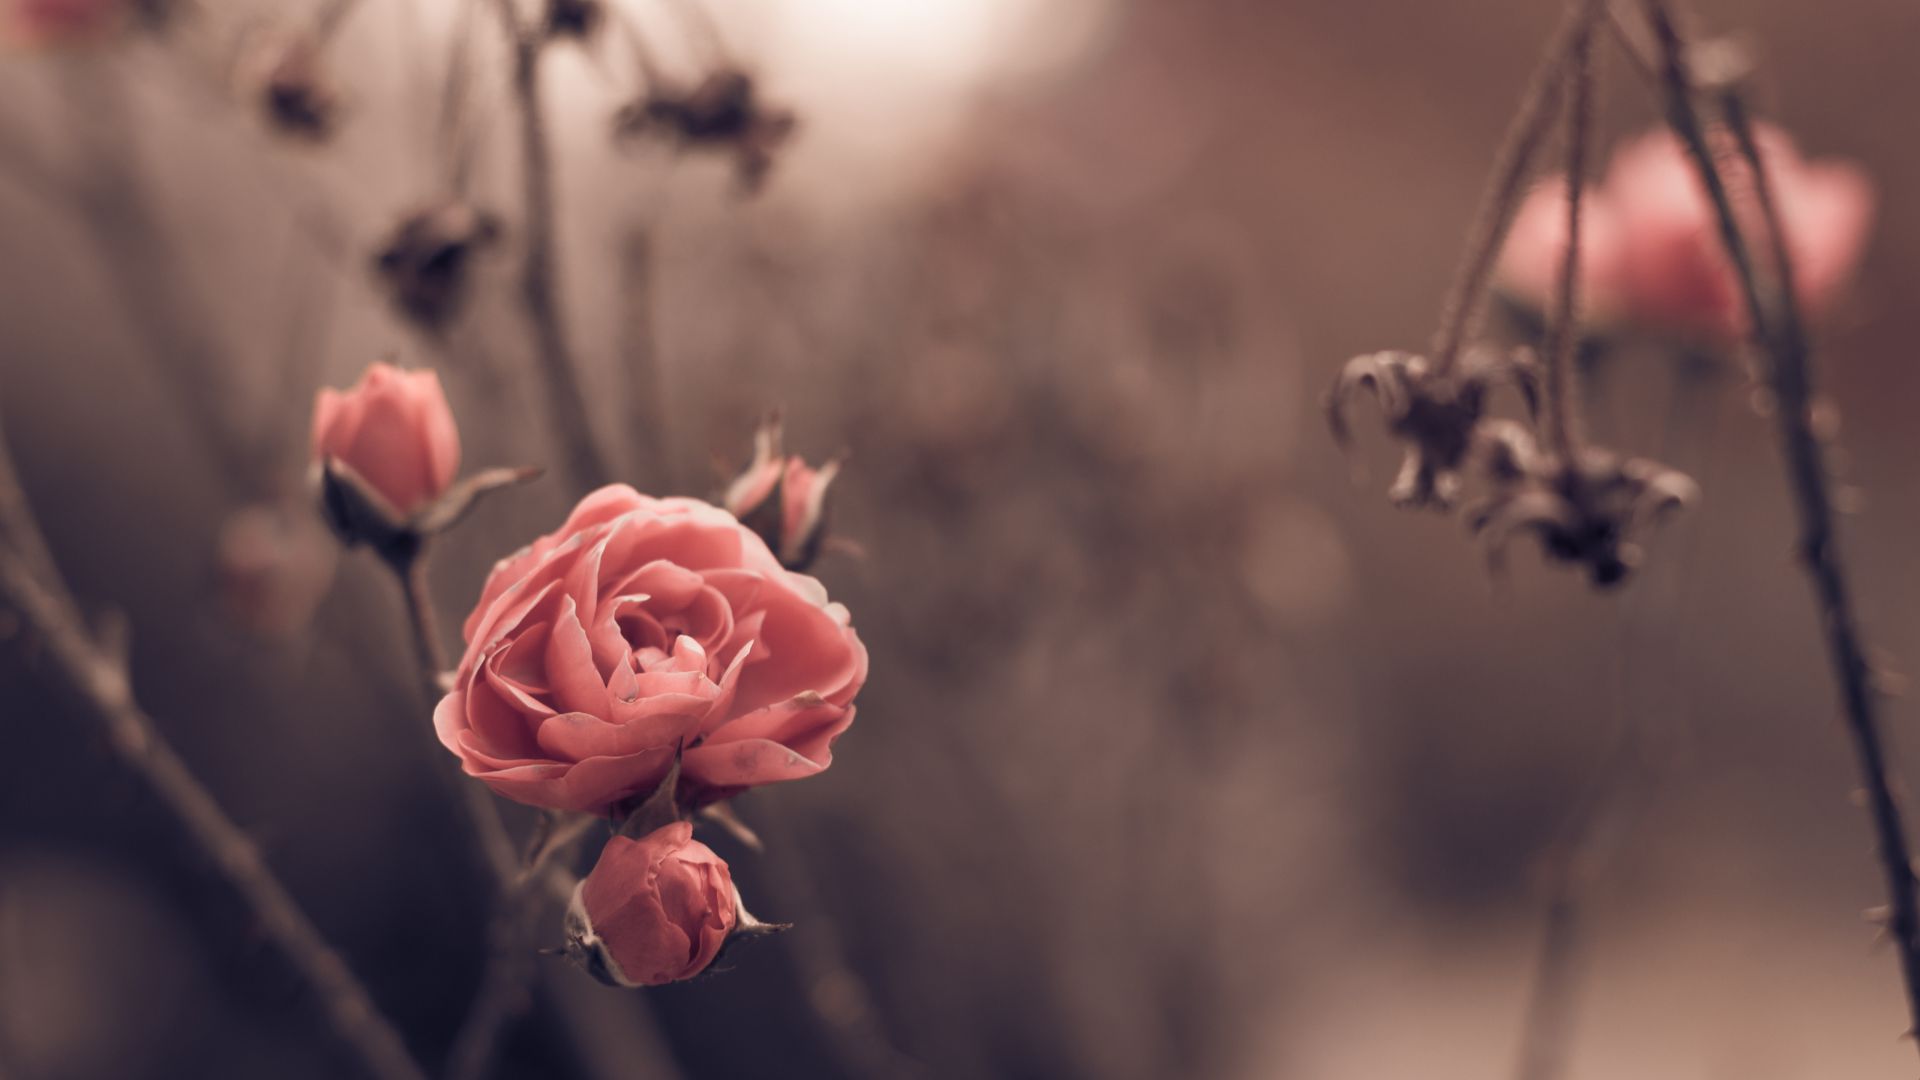 Роза, 5k, 4k, весна, цветы, размытость, Rose, 5k, 4k wallpaper, 8k, spring, flowers, blur (horizontal)